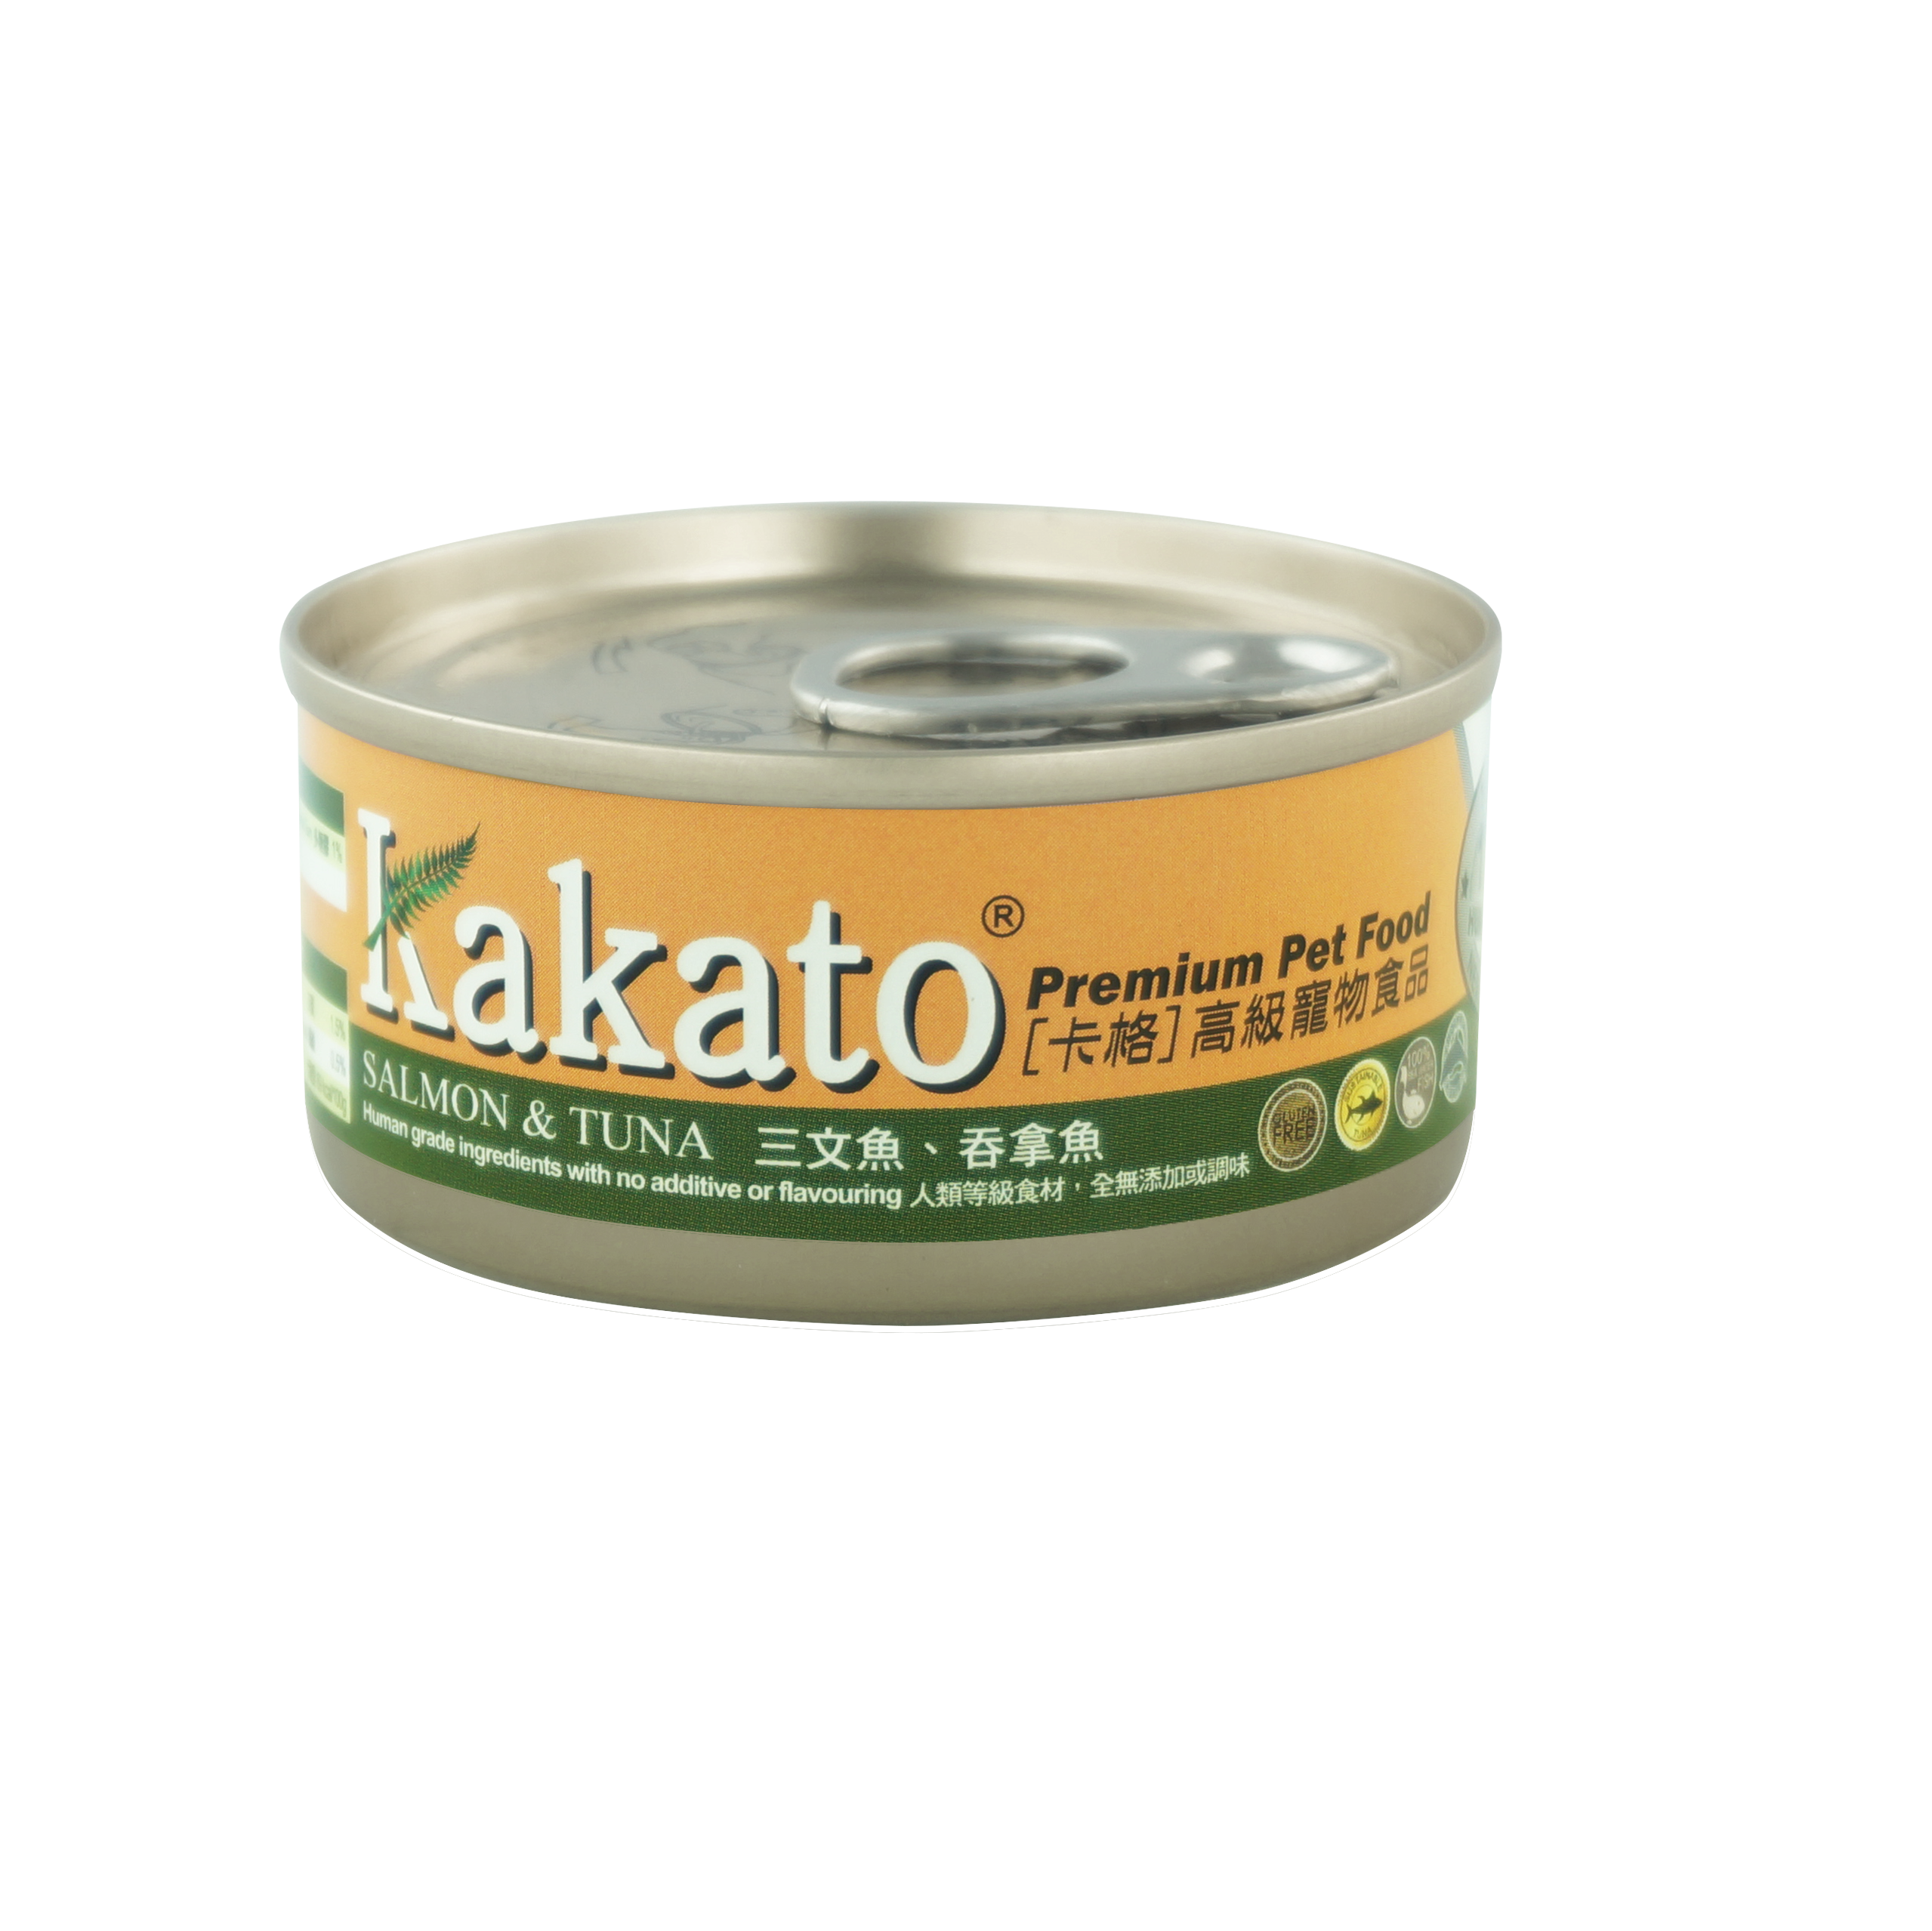 kakato salmon and tuna product shot